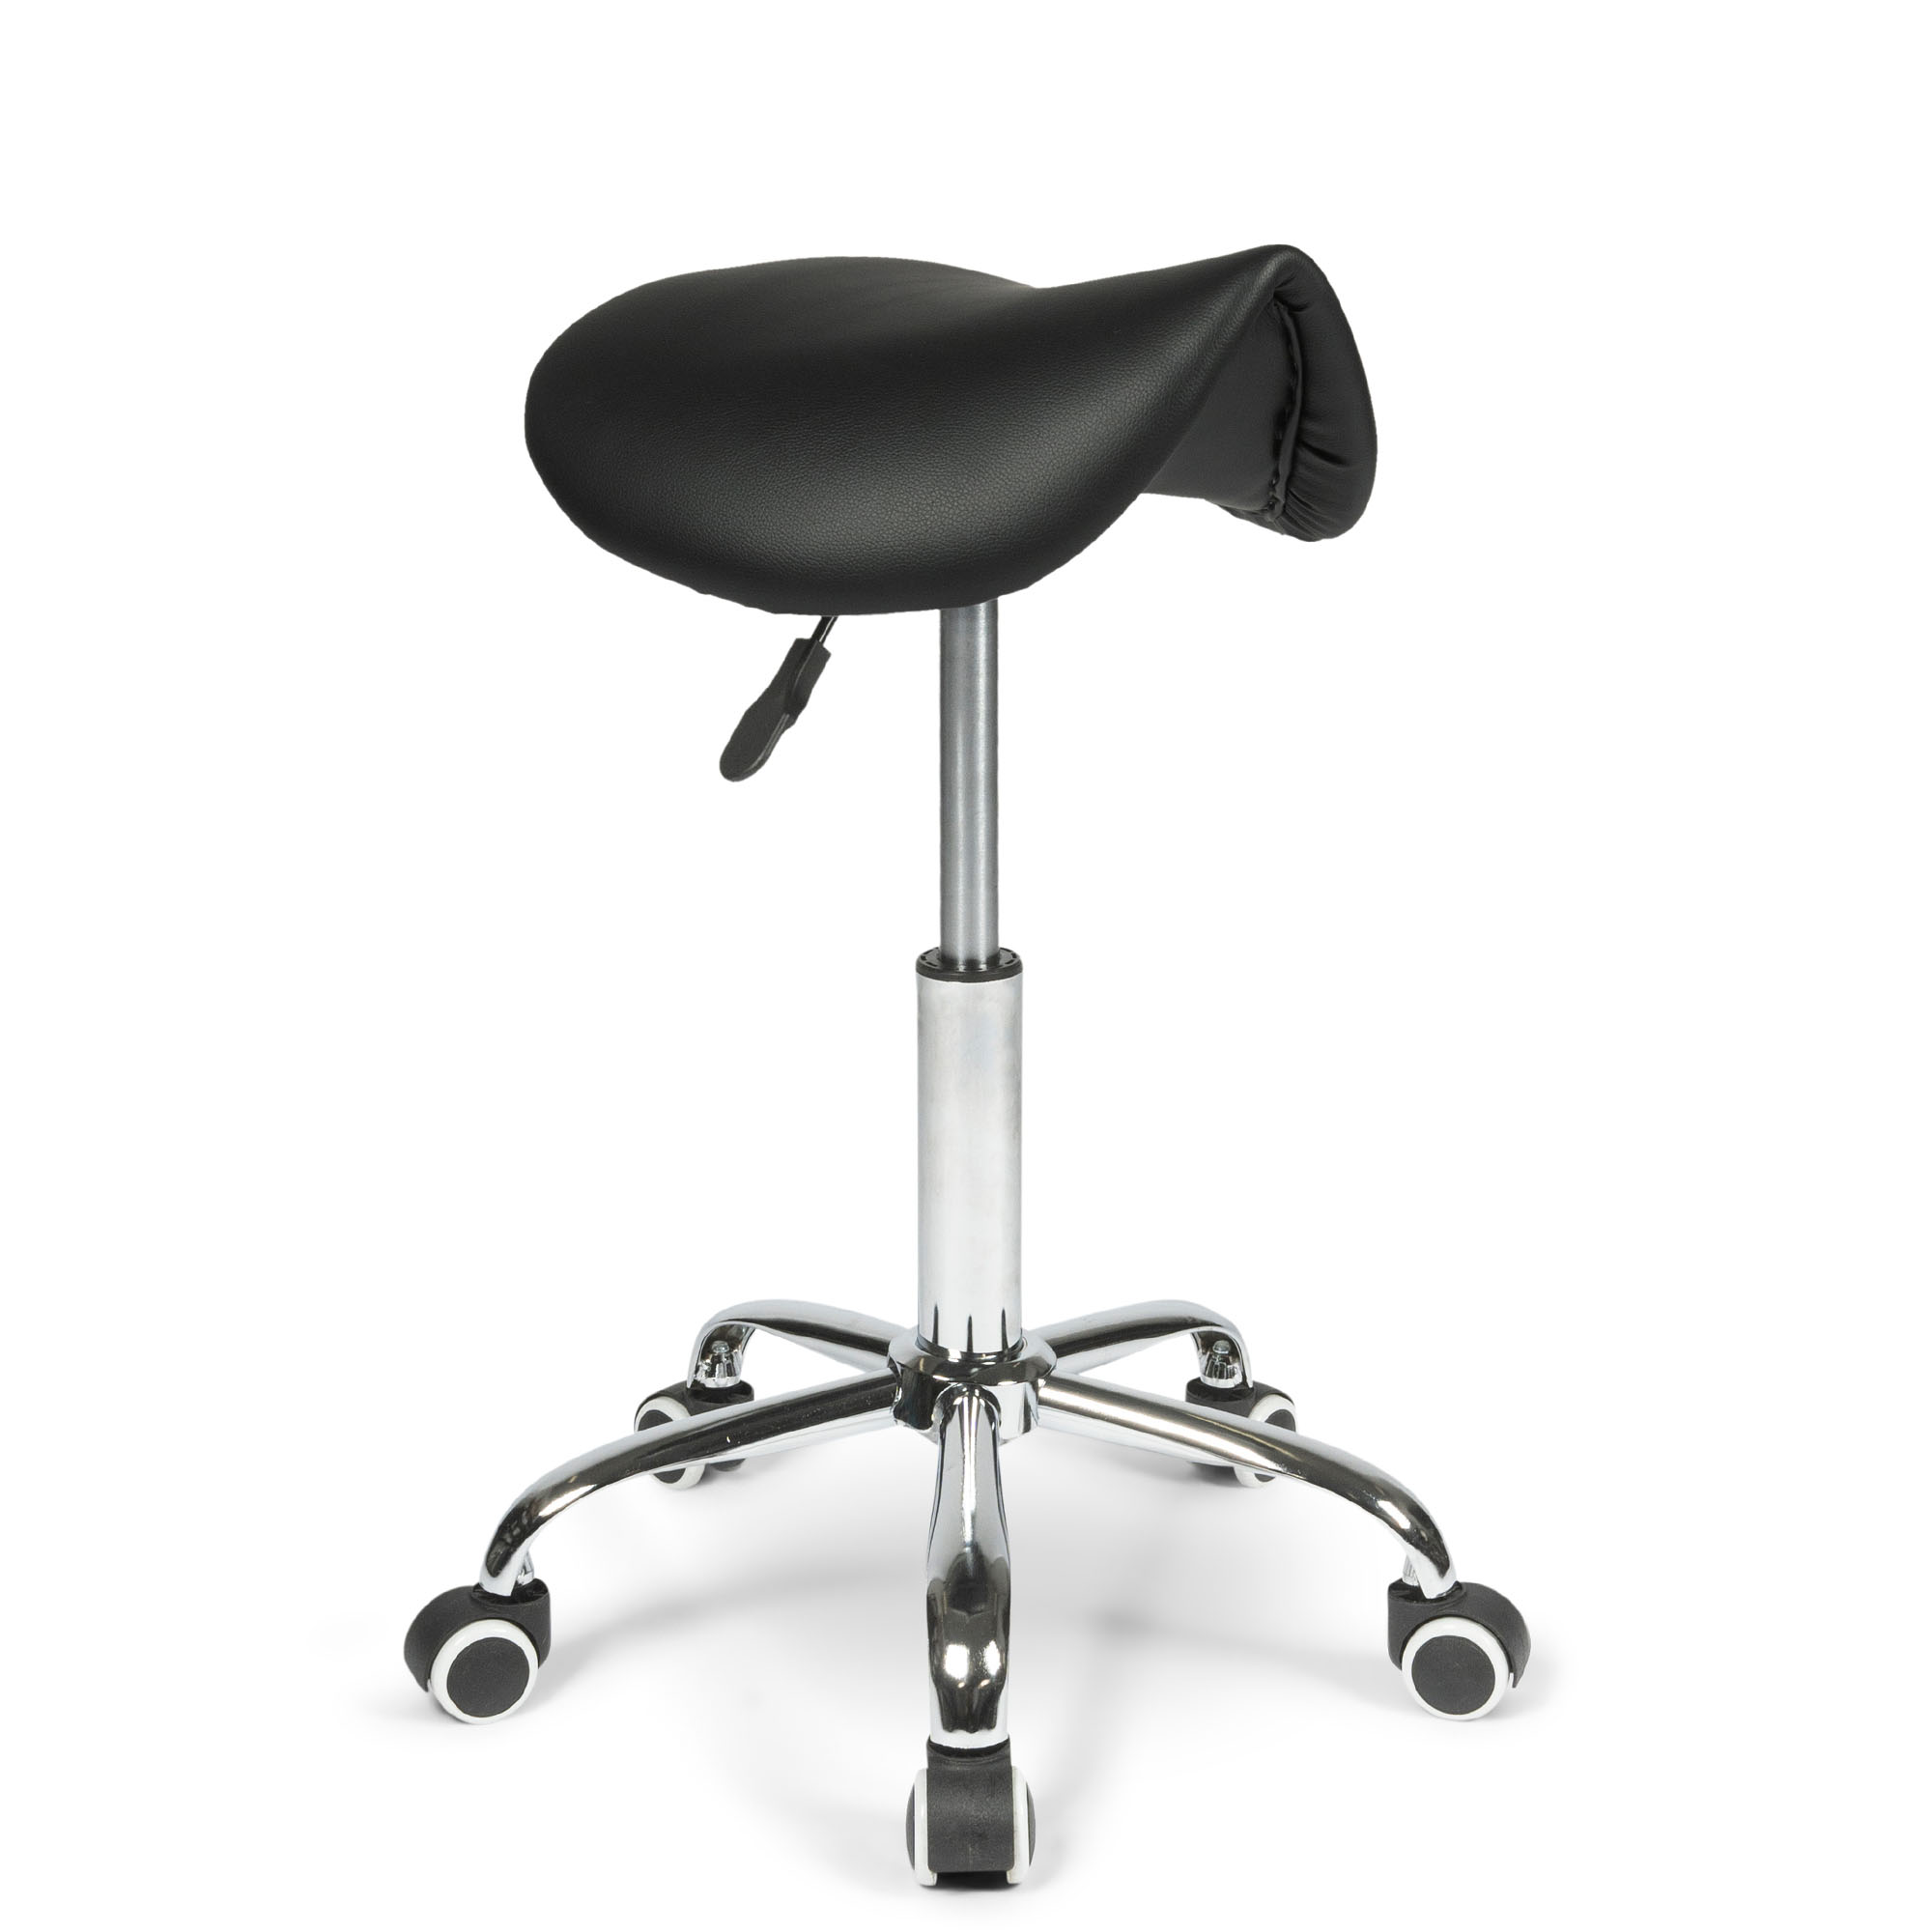 dunimed ergonomic saddle stool measurements